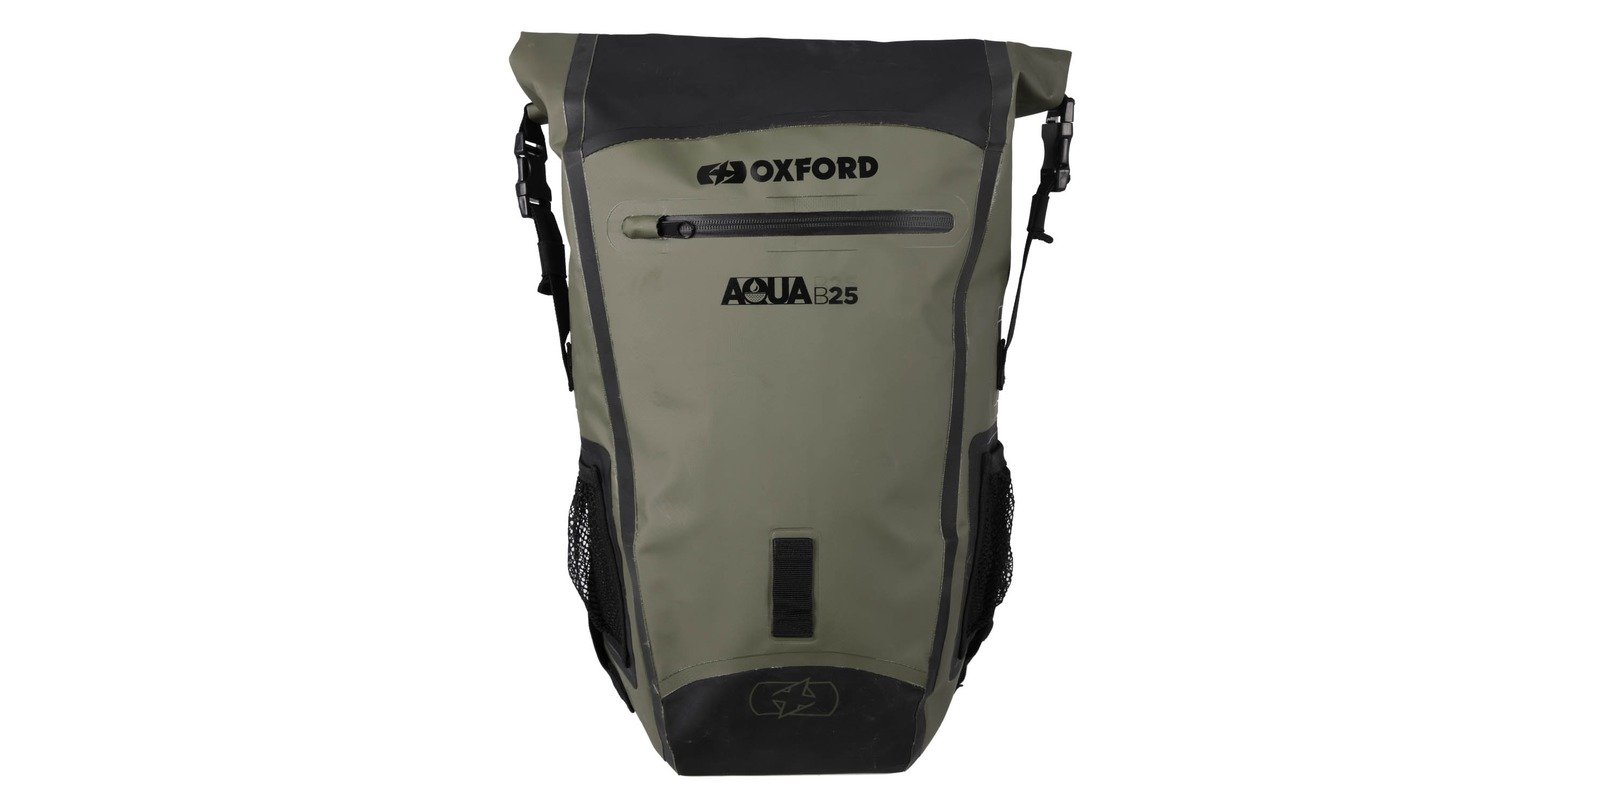 Obrázek produktu vodotěsný batoh Aqua B-25, OXFORD (khaki/černý, objem 25 l) OL406